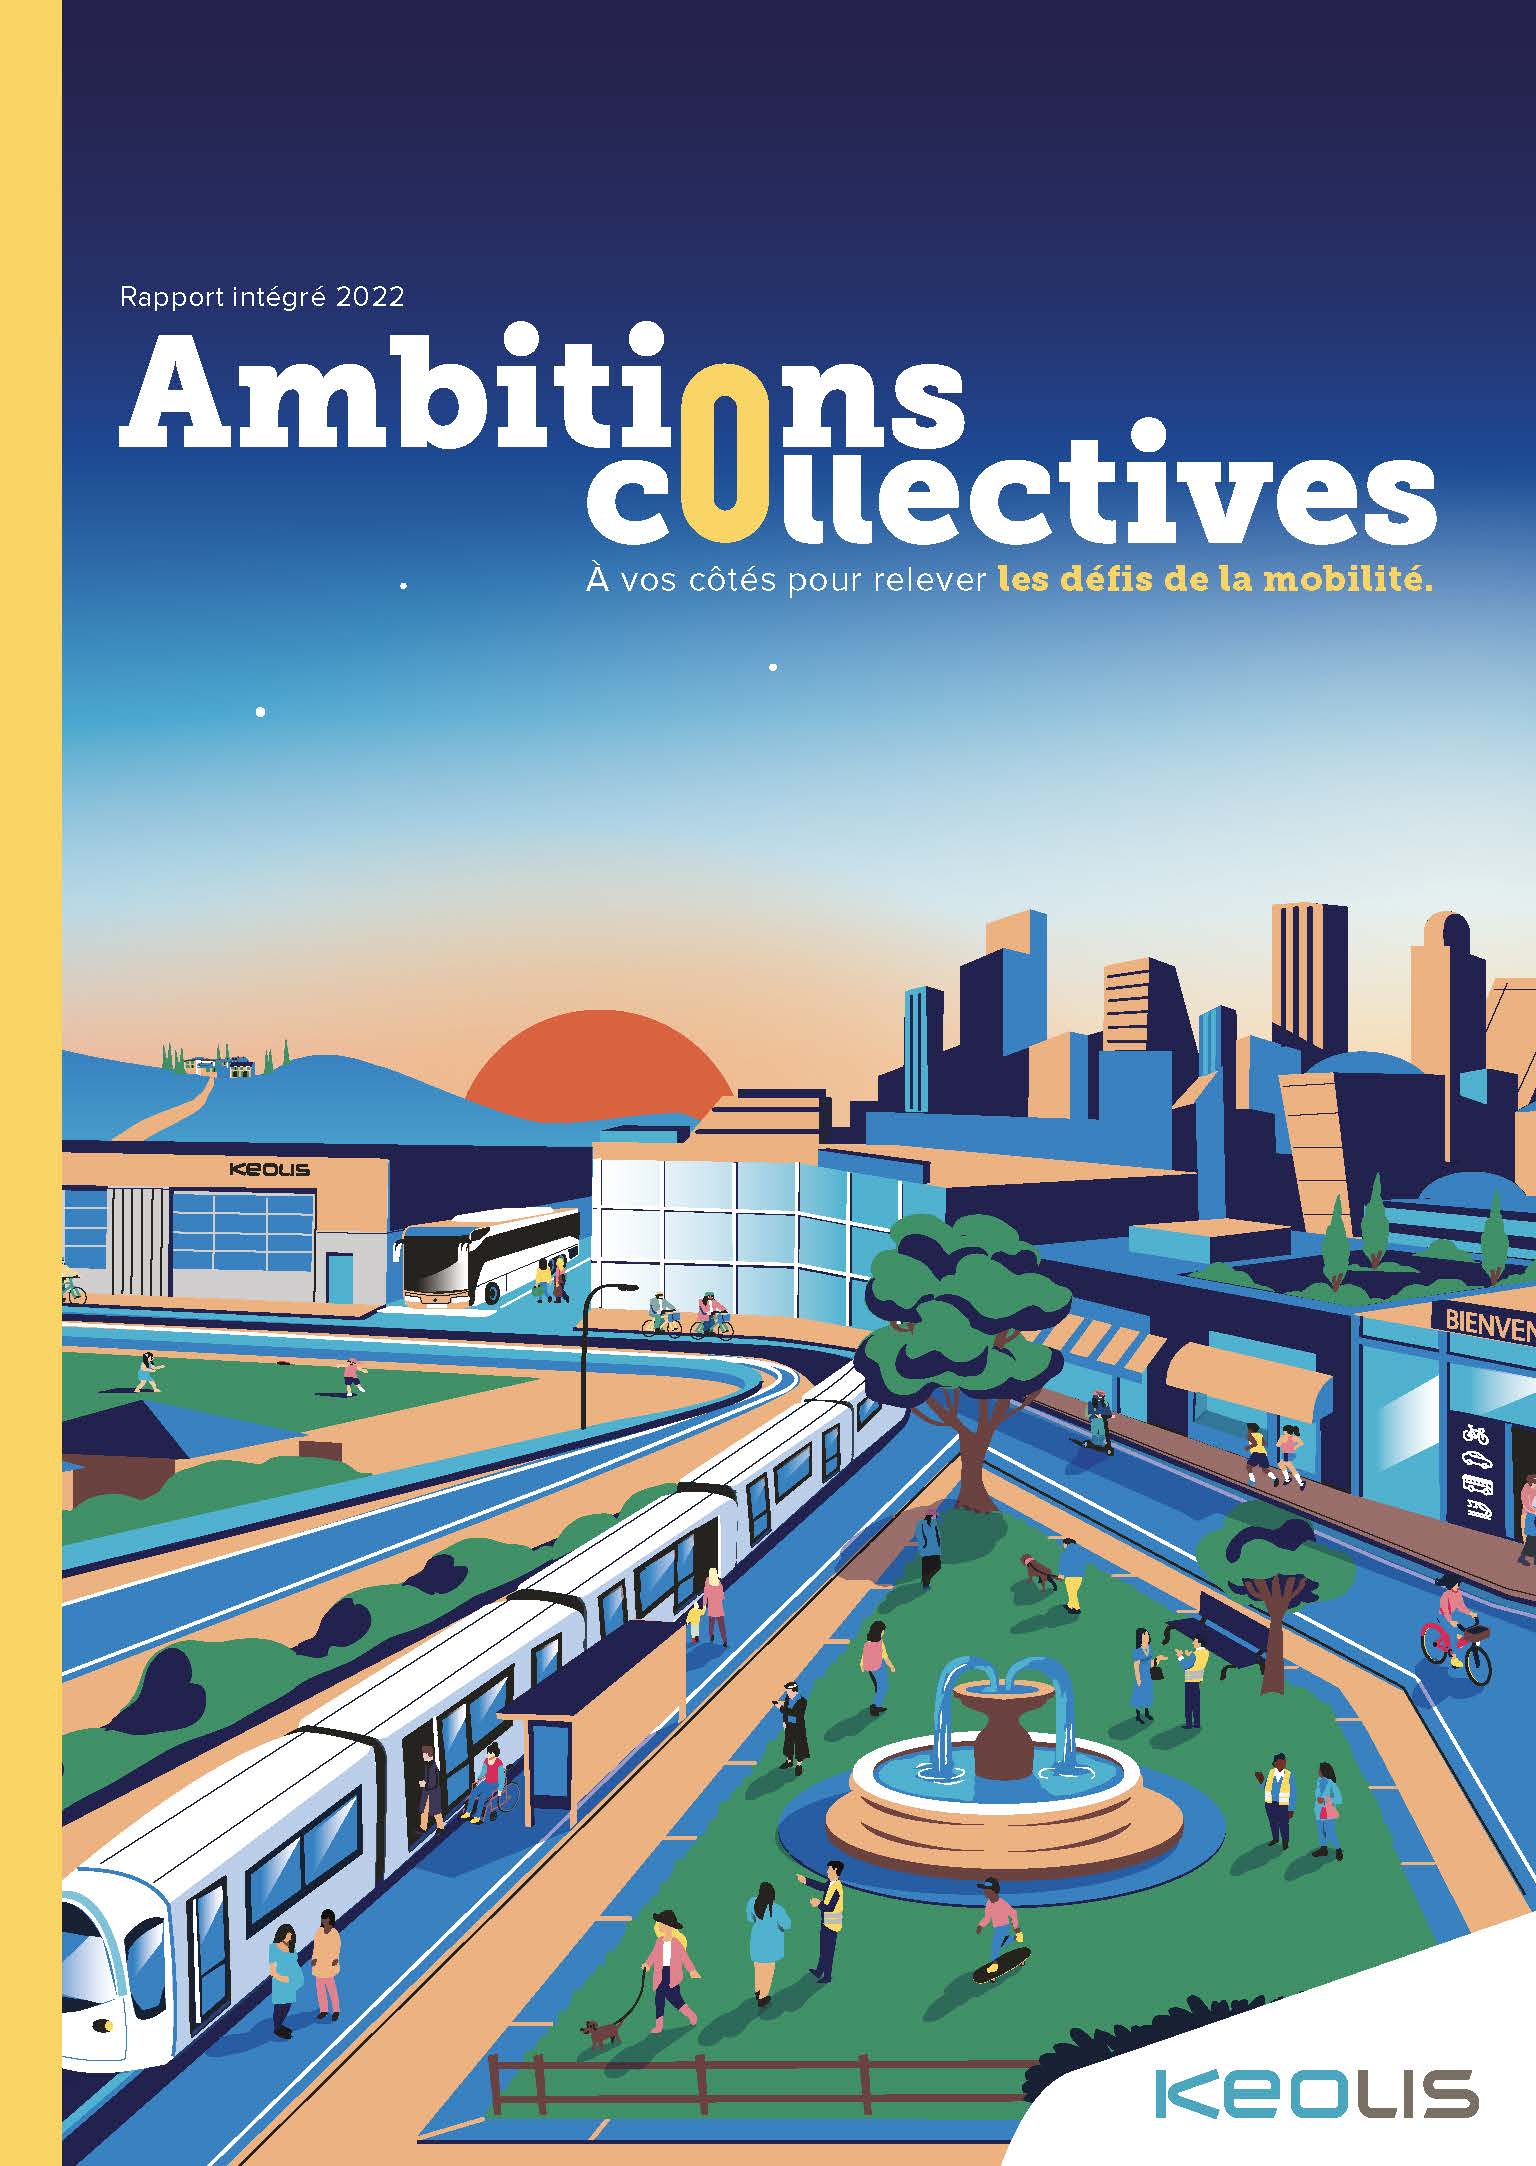 Ambitions collectives : Illustration de la couverture du rapport intégré mettant en scène un tram dans une ville